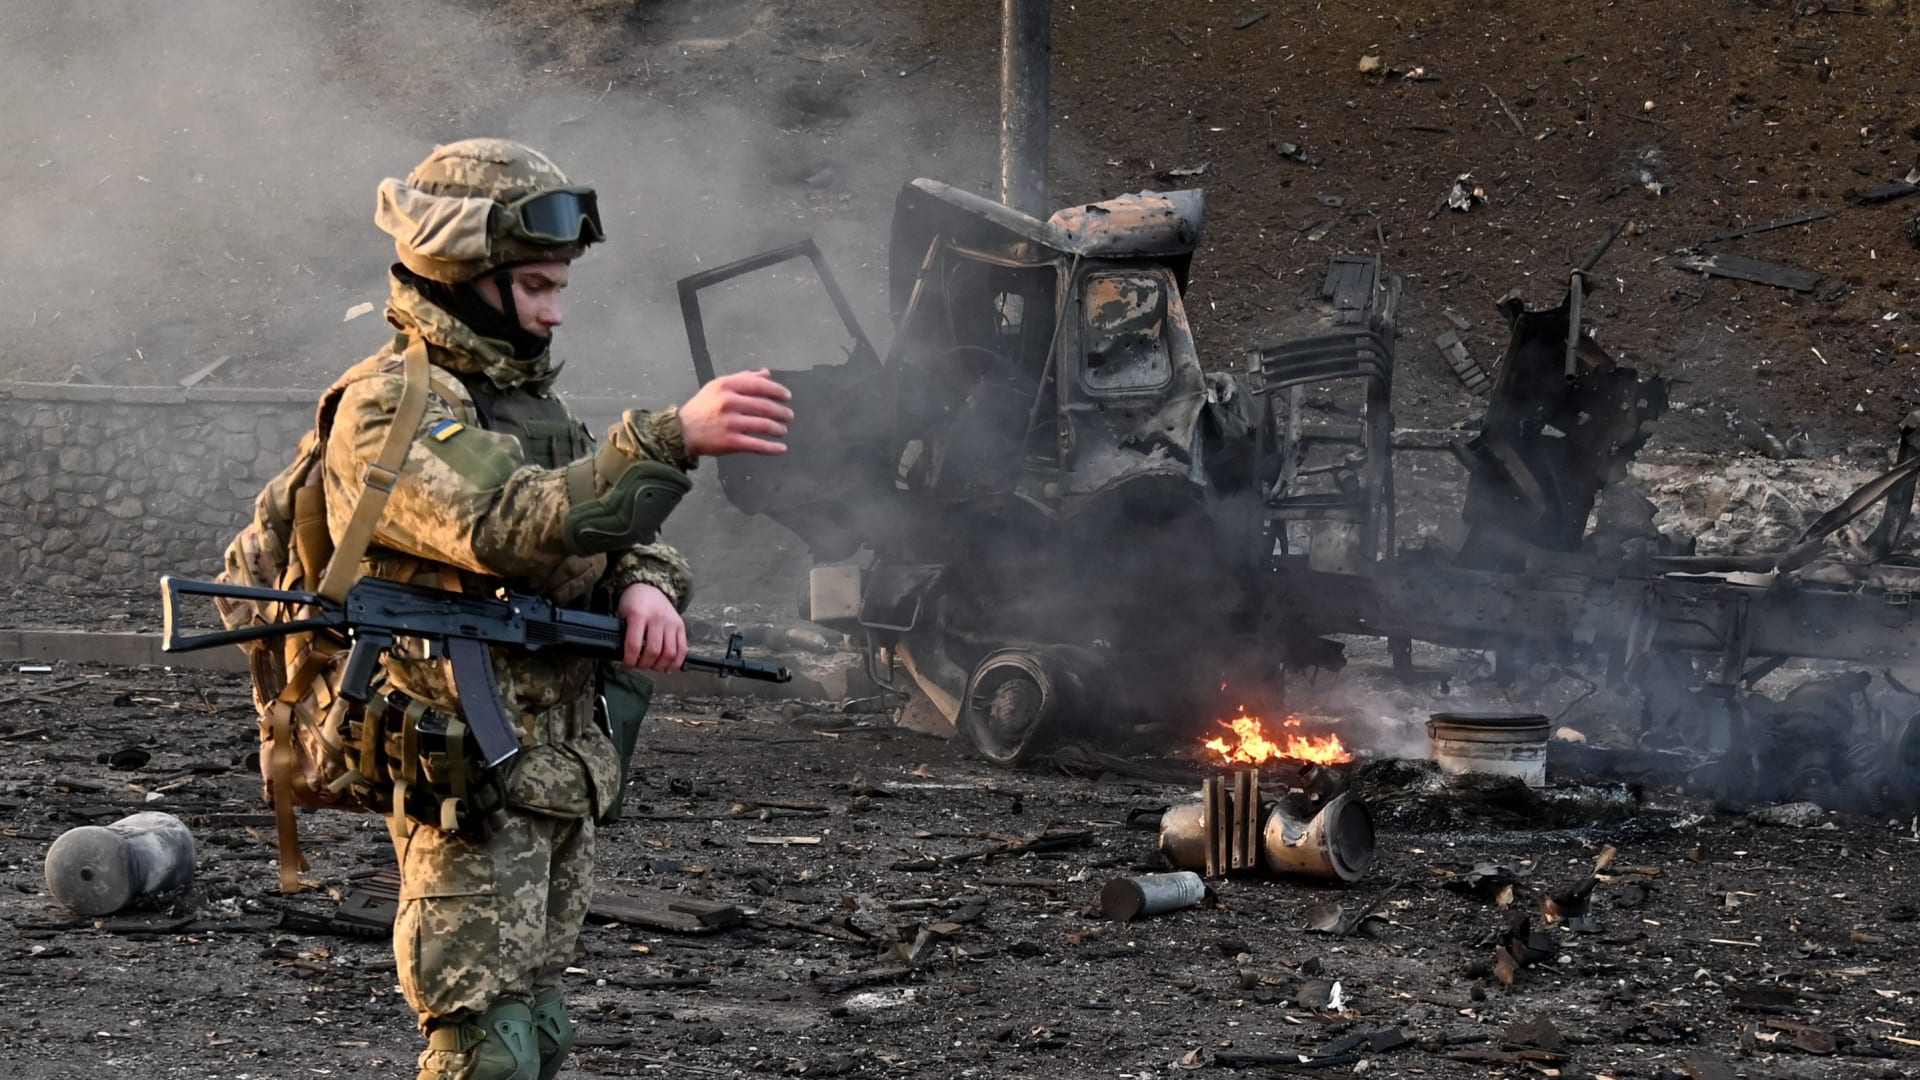 الحرب الروسية الأوكرانية تعصف بجيوب الأمريكيين وأمريكا تقترب من عتبة الألم